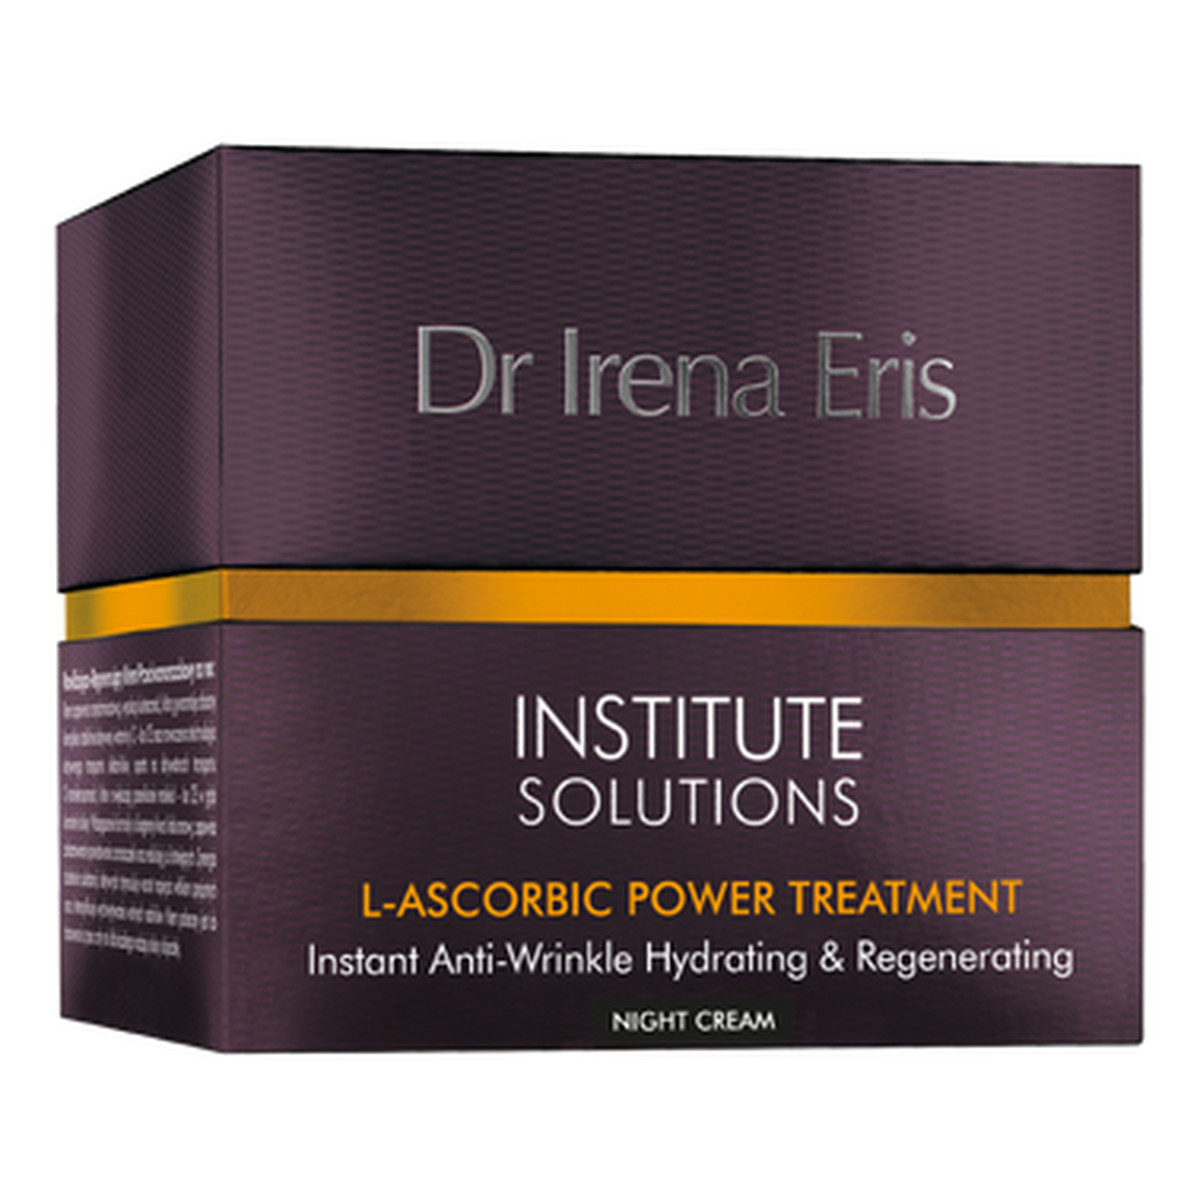 Dr Irena Eris Institute Solutions Przeciwzmarszczkowy krem do twarzy nawilżająco-regenerujący na noc 50ml